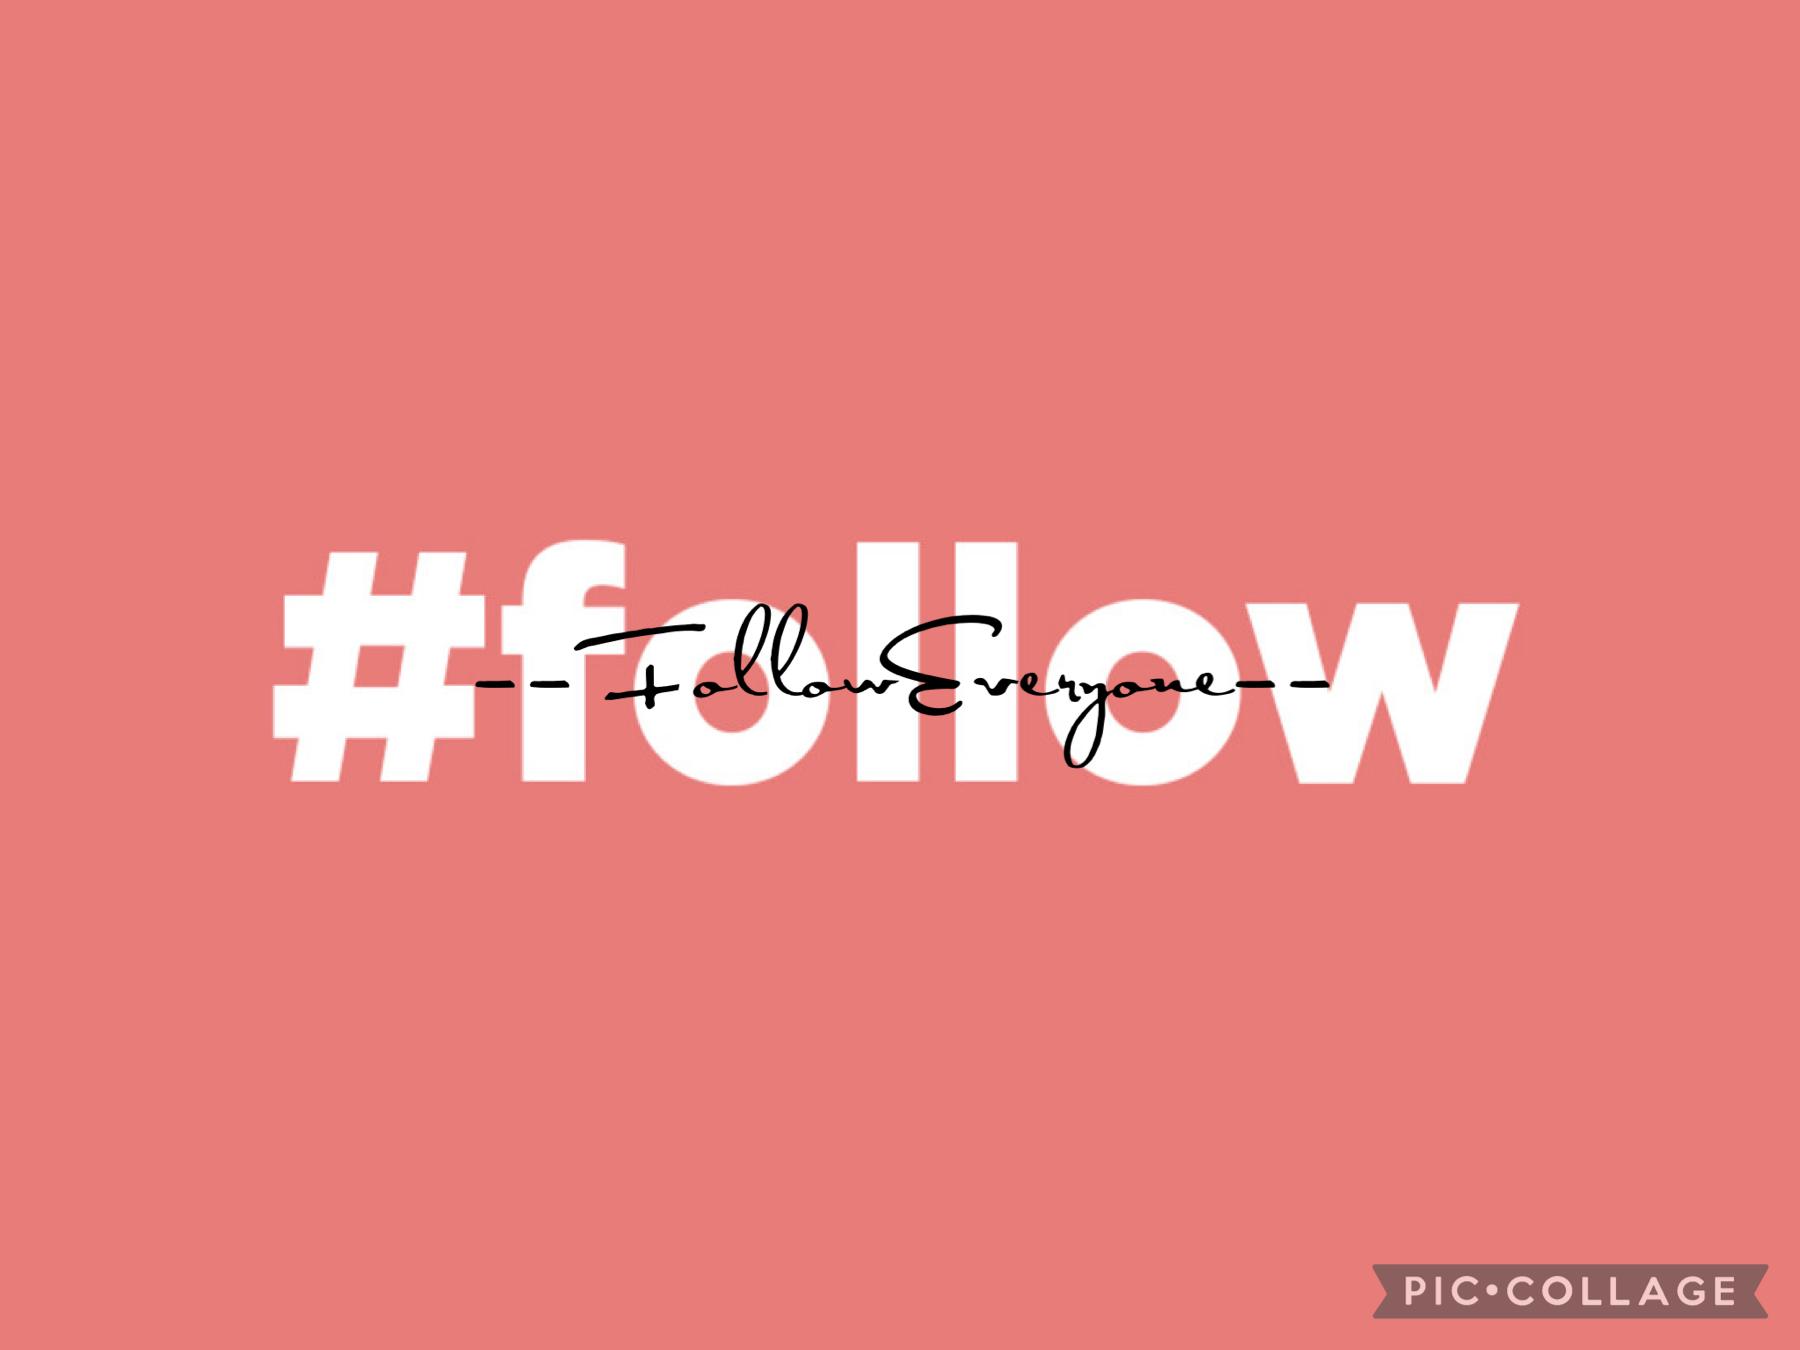 FollowEveryone (I follow Everyone I can)